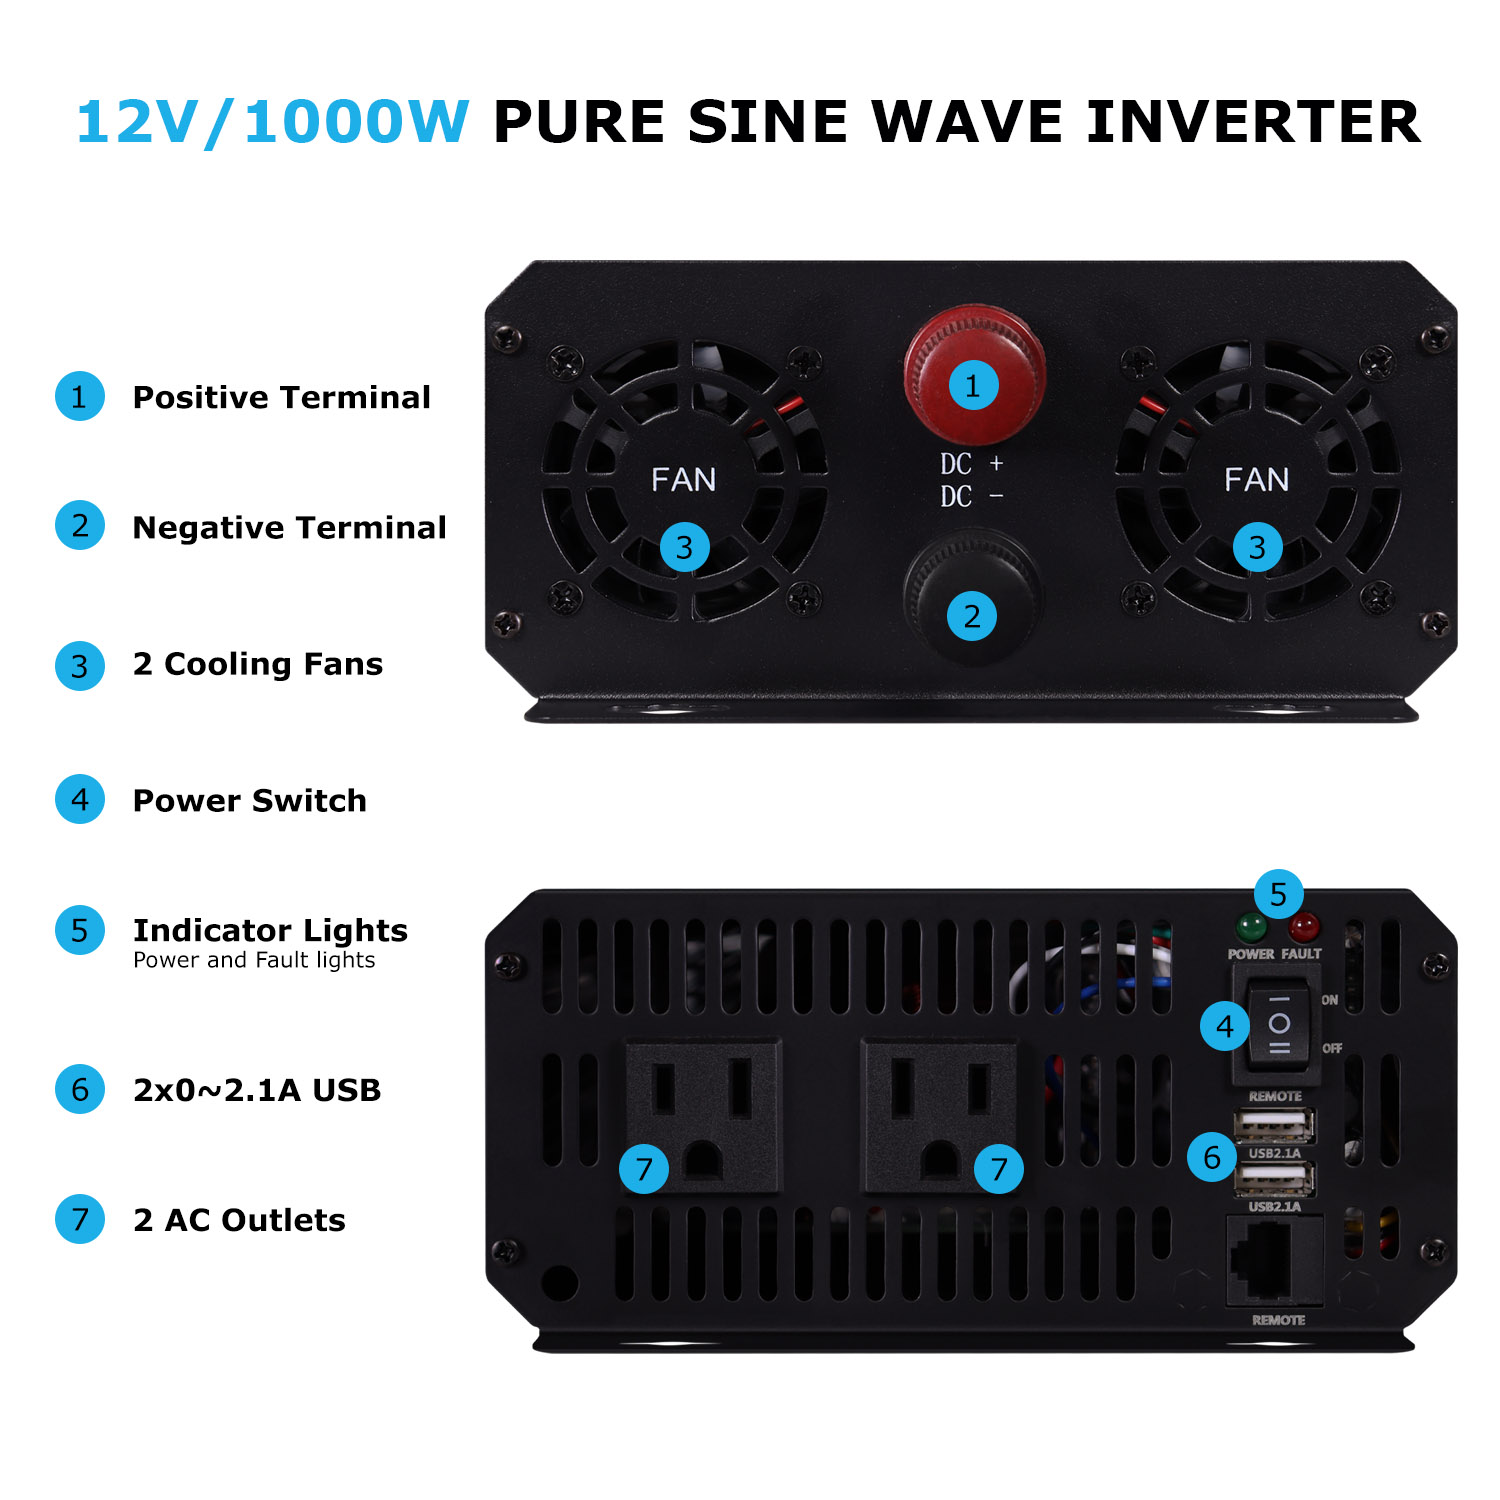 12V 1000W Pure Sine Wave Inverter for Wind Turbine Generator